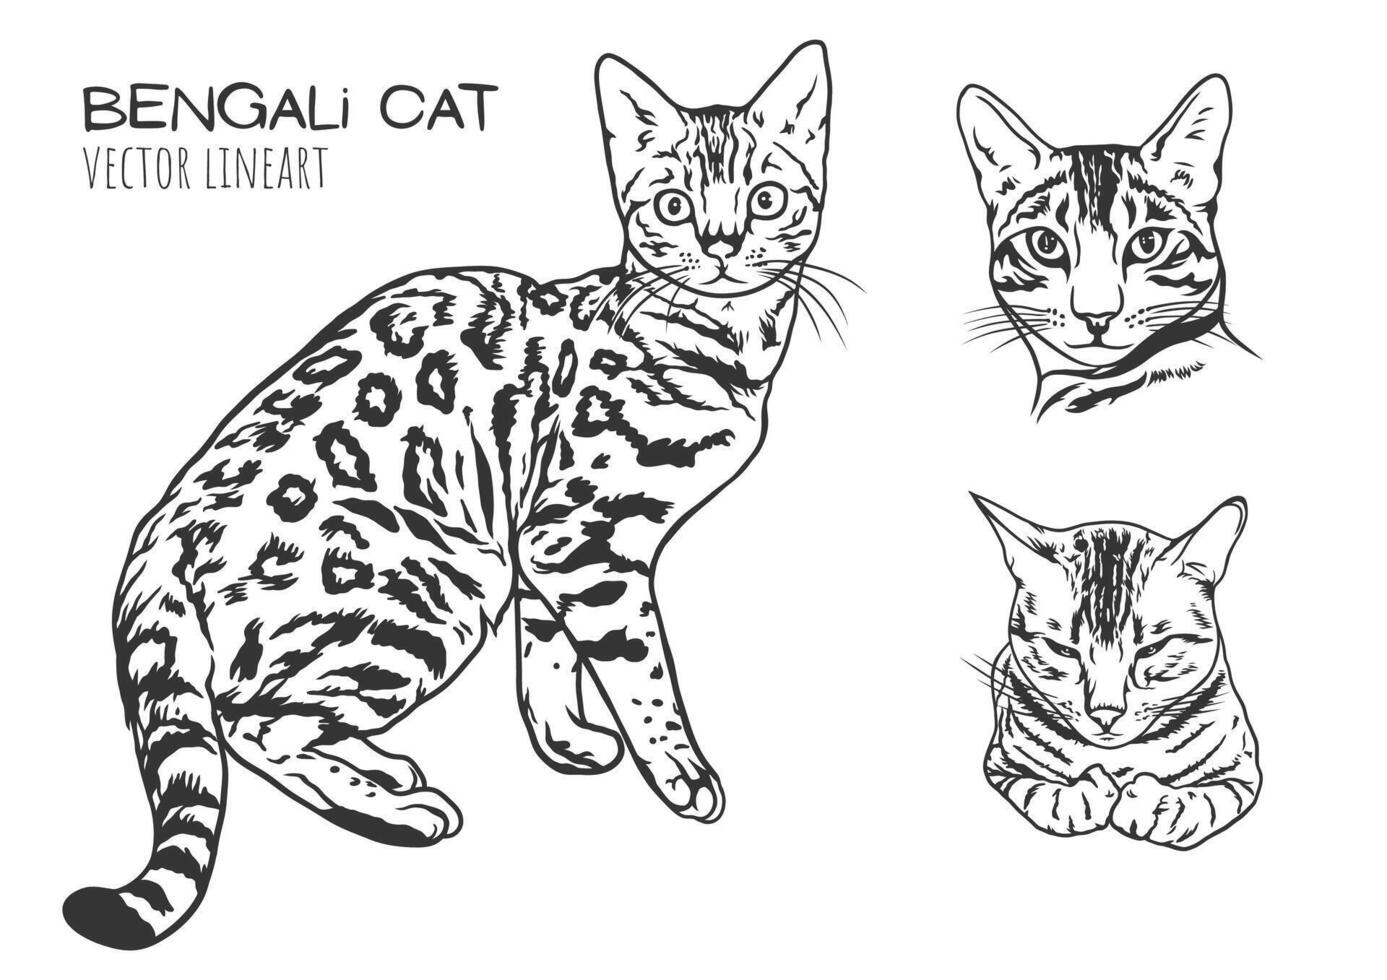 une vecteur ligne art illustration de une bengali chats avec taches, rayures, et expressif visage